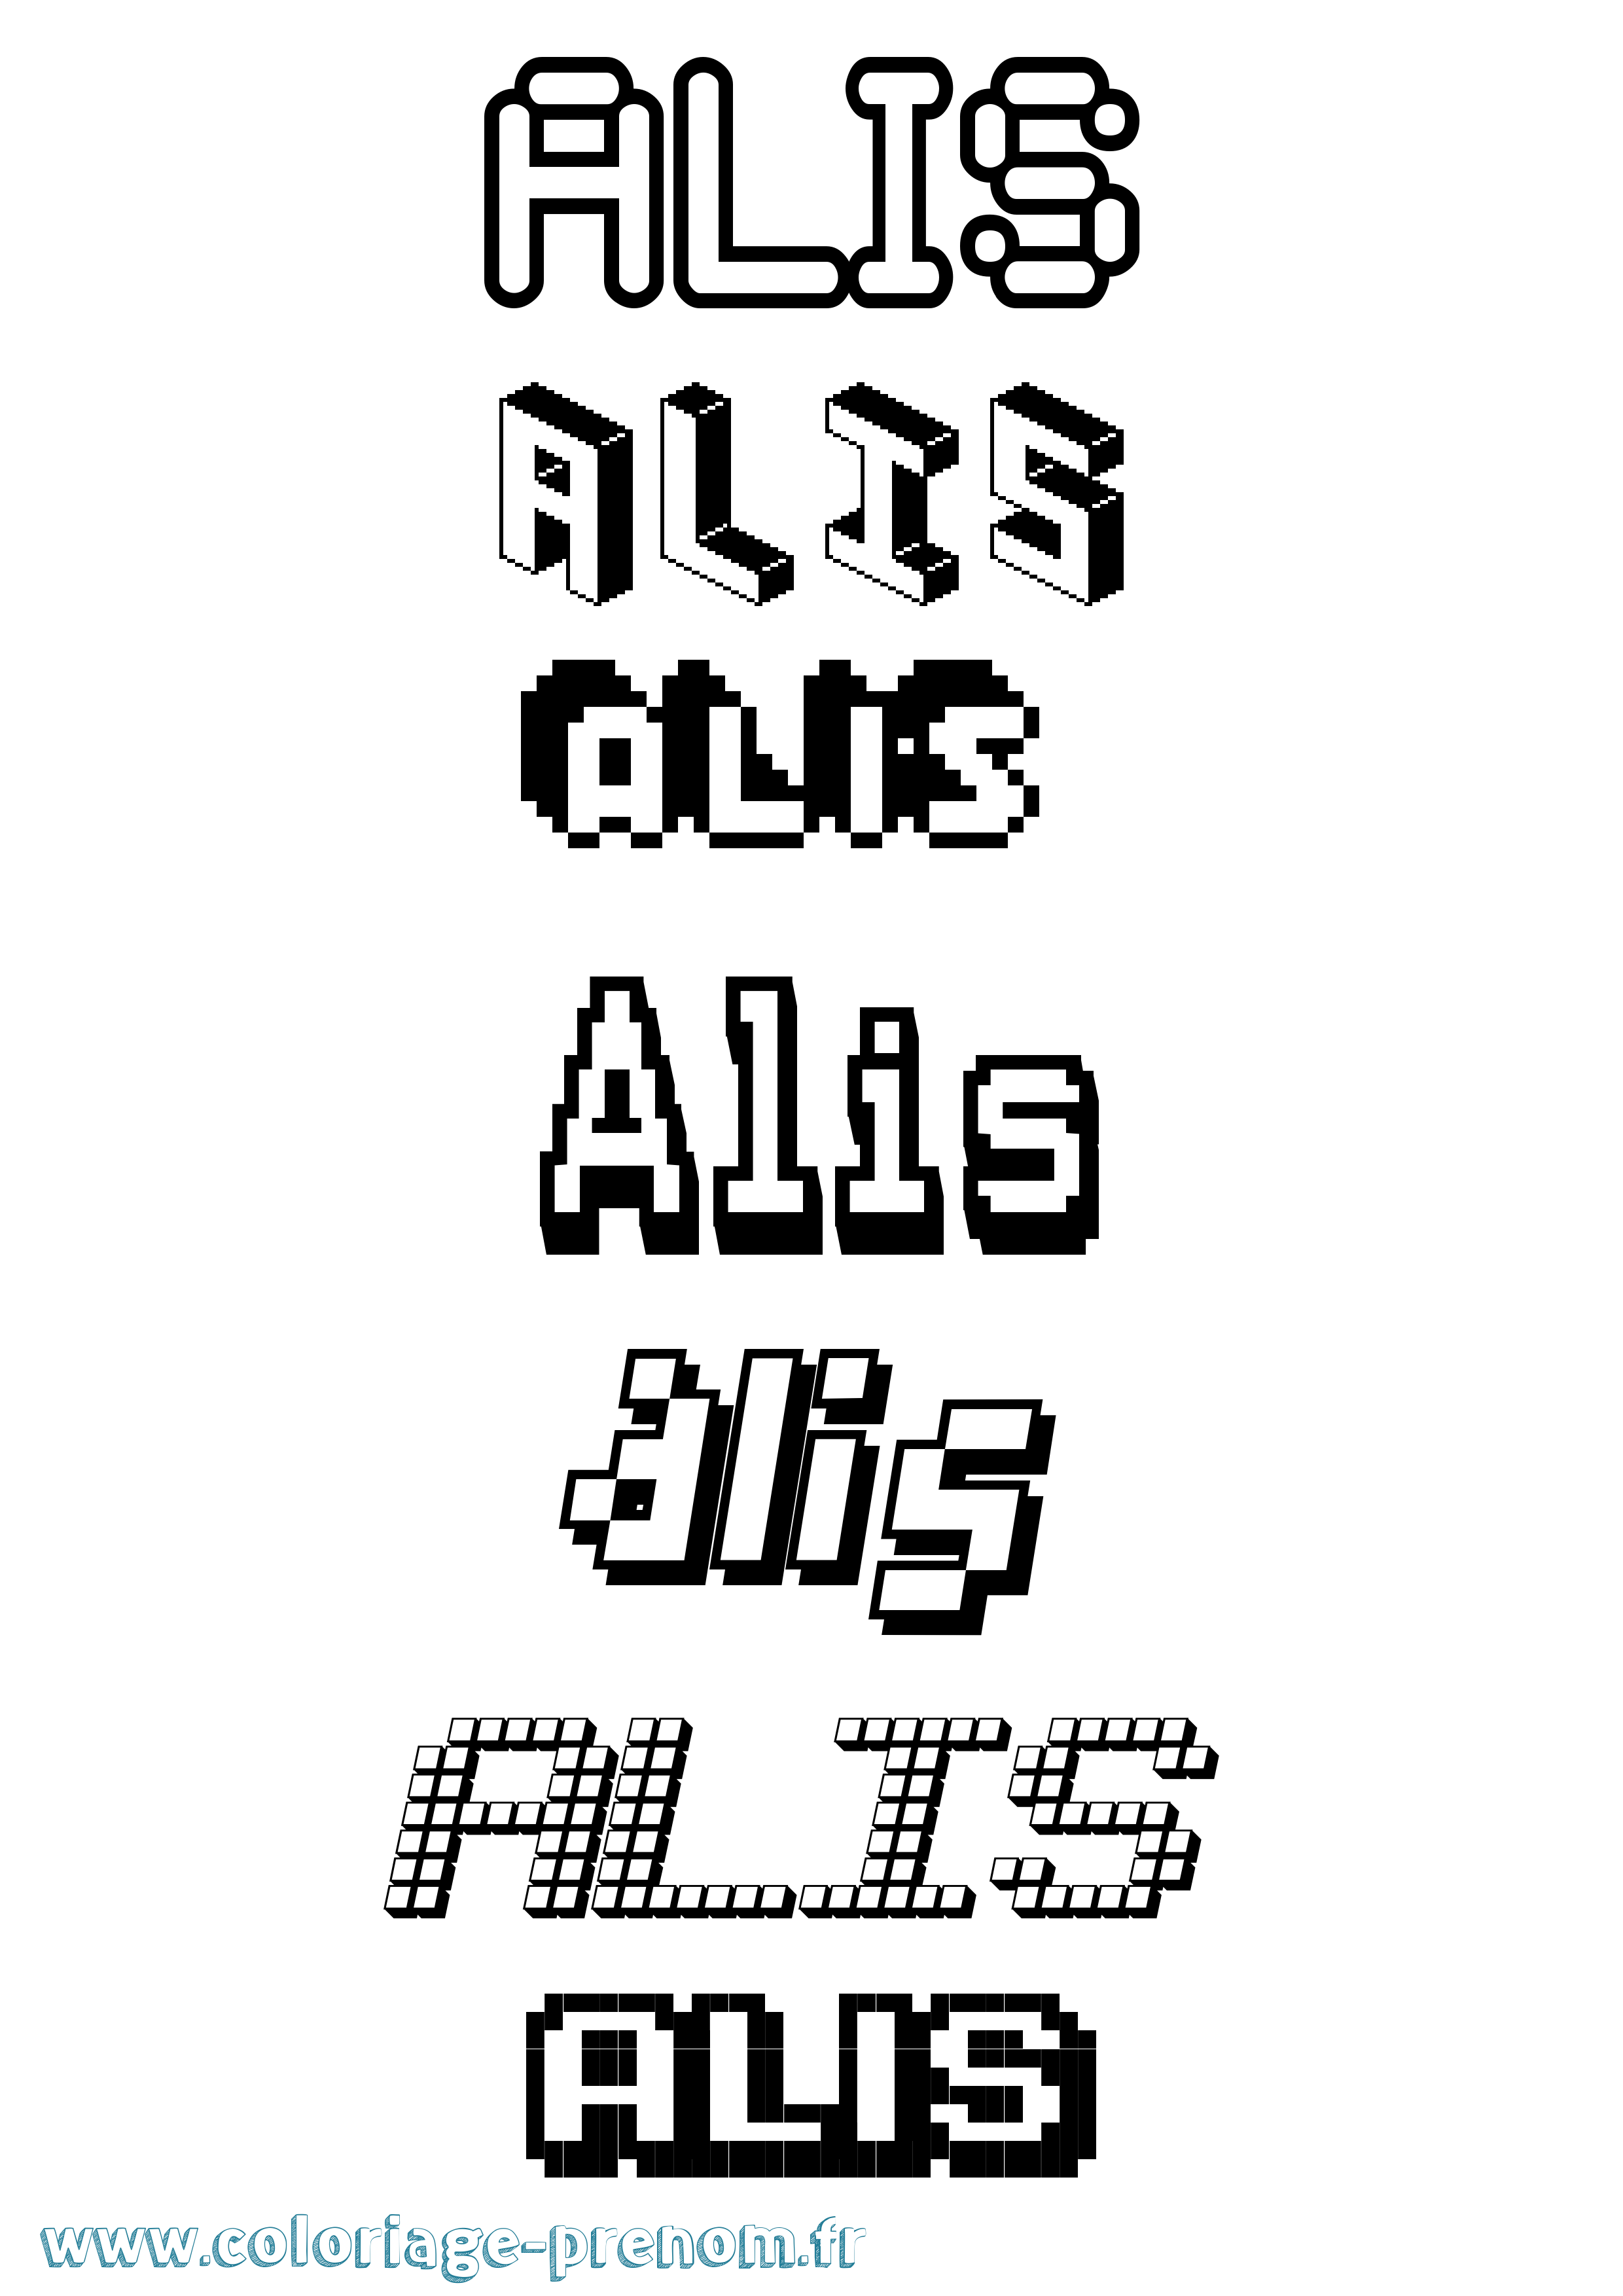 Coloriage prénom Alis Pixel